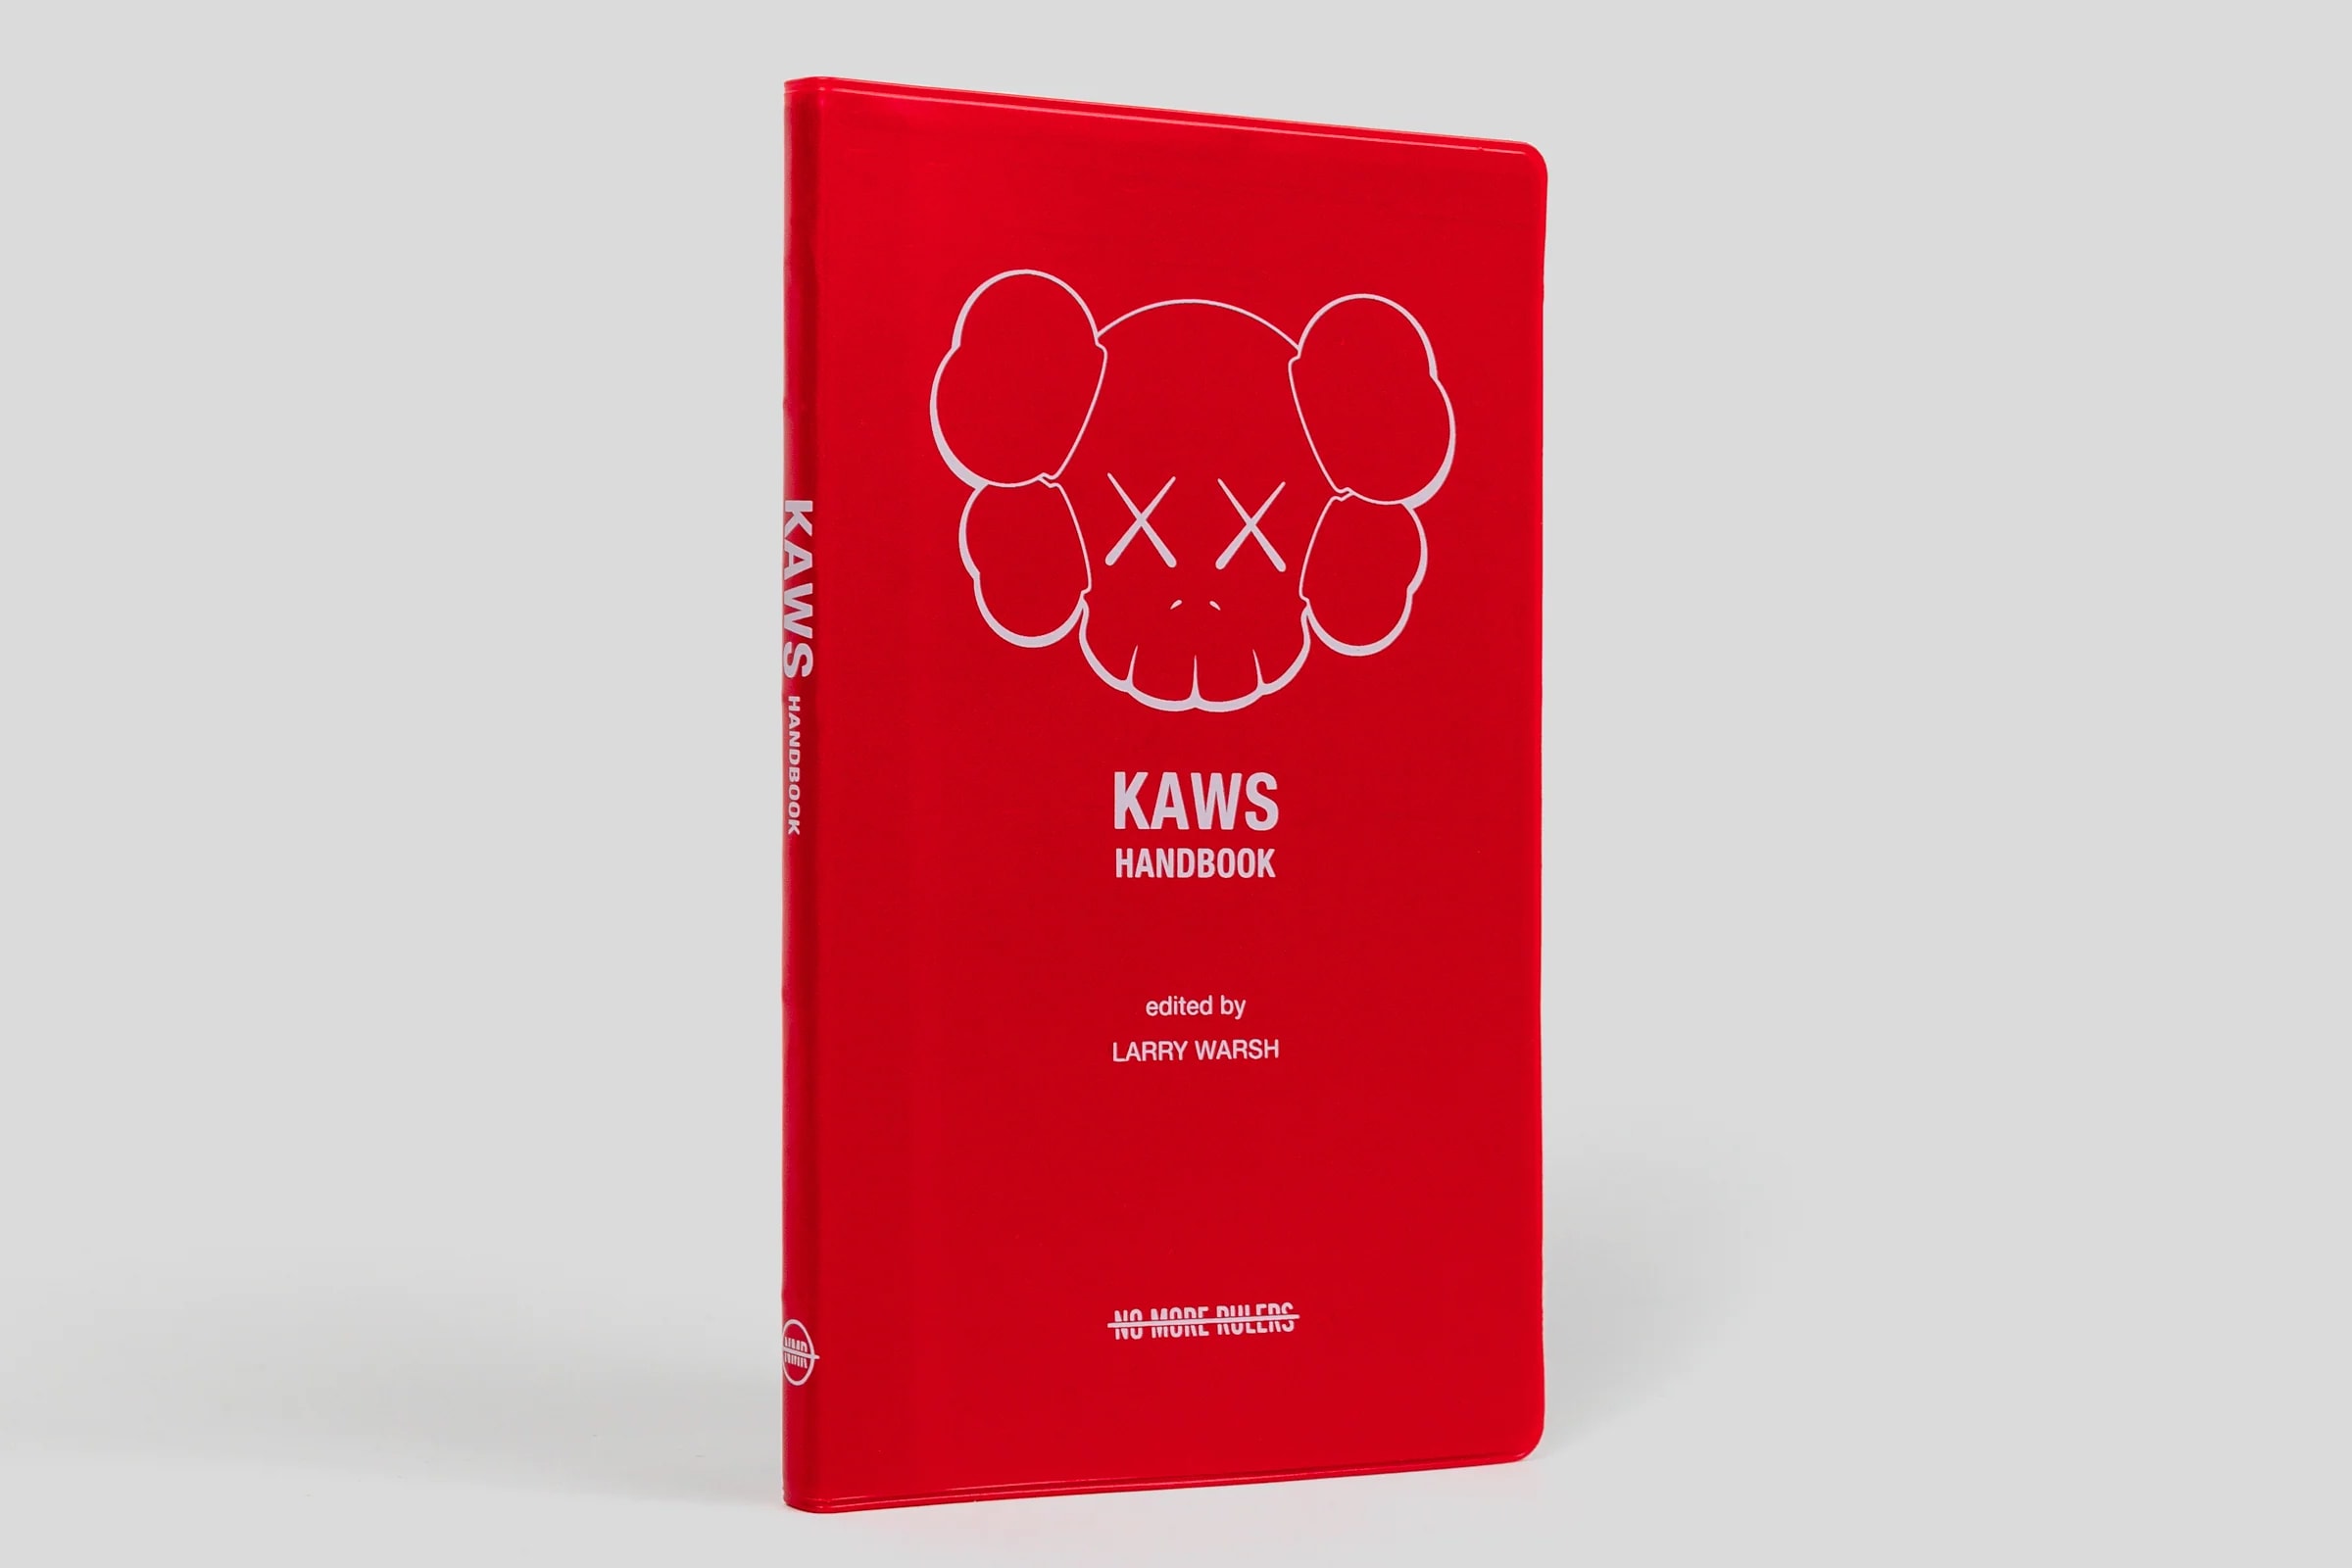 kaws handbook no more rulers art artworks 